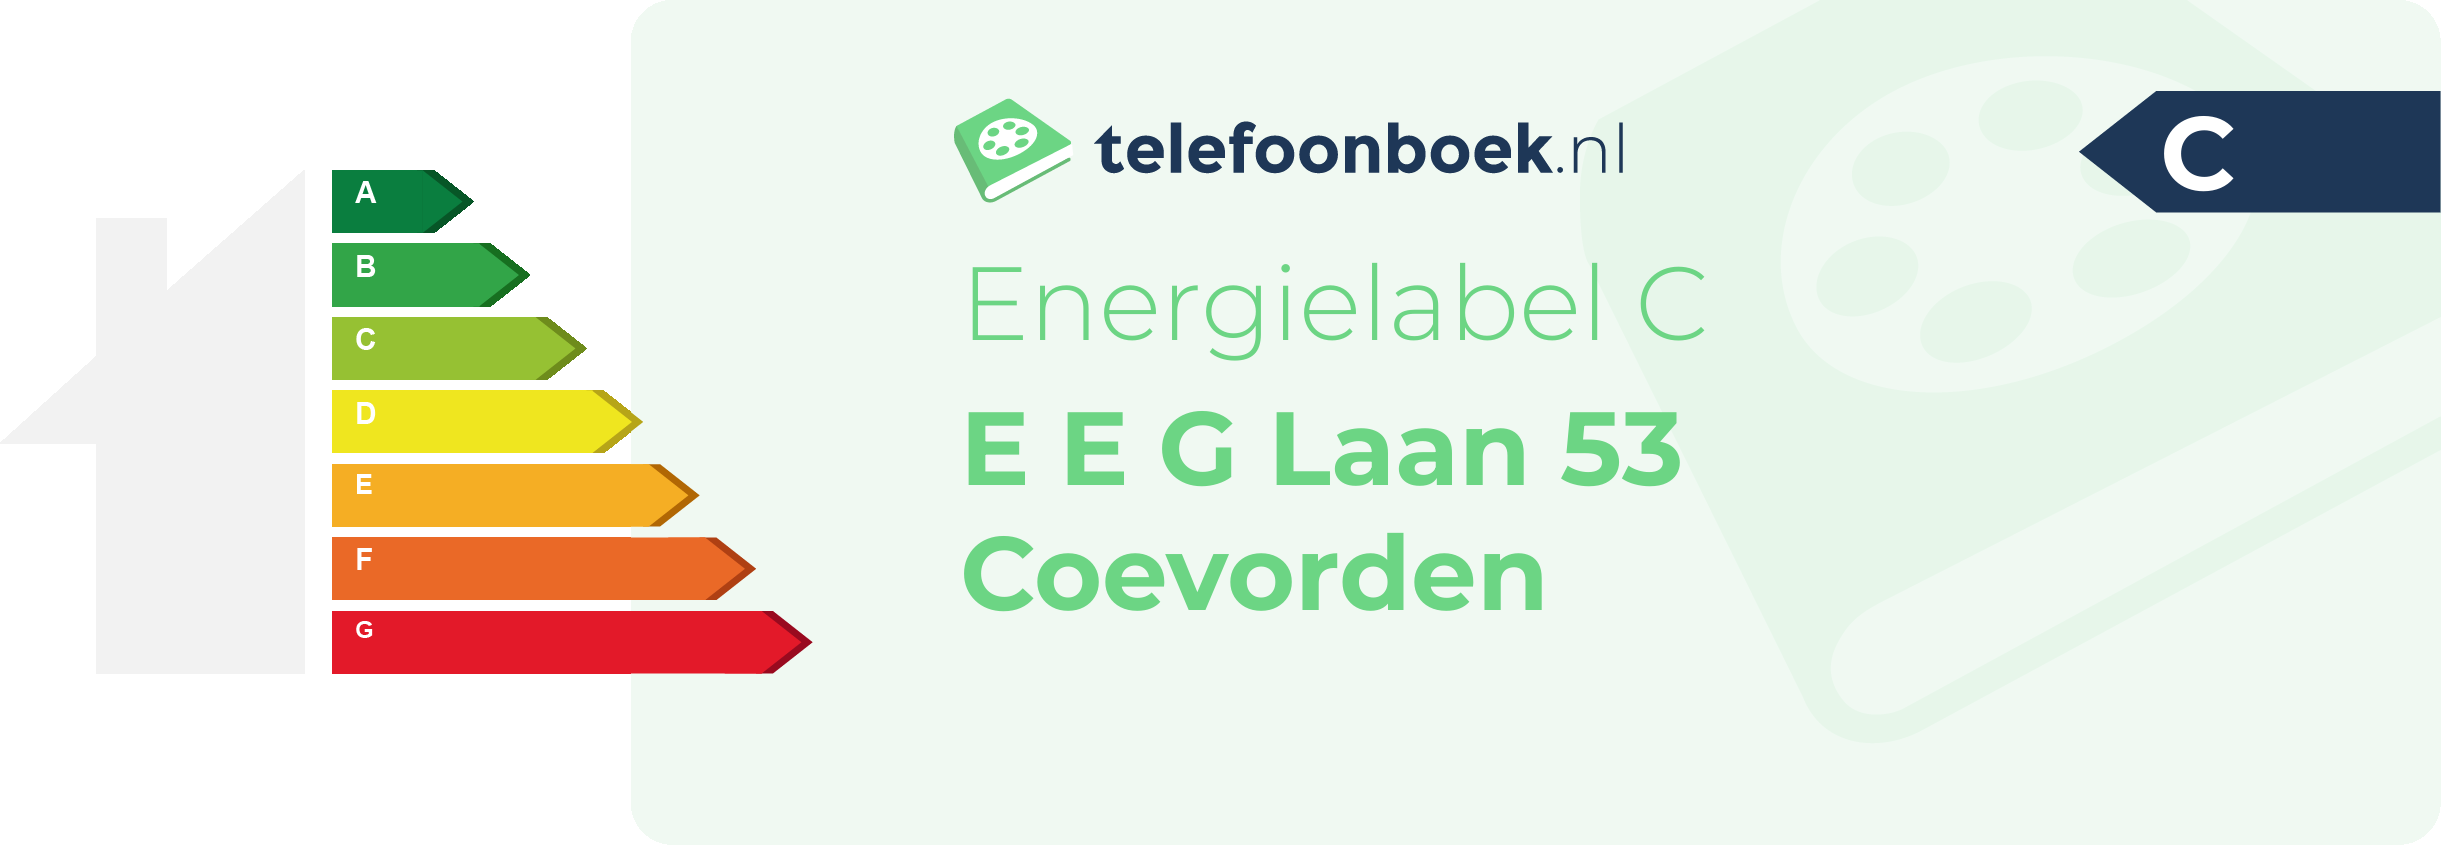 Energielabel E E G Laan 53 Coevorden